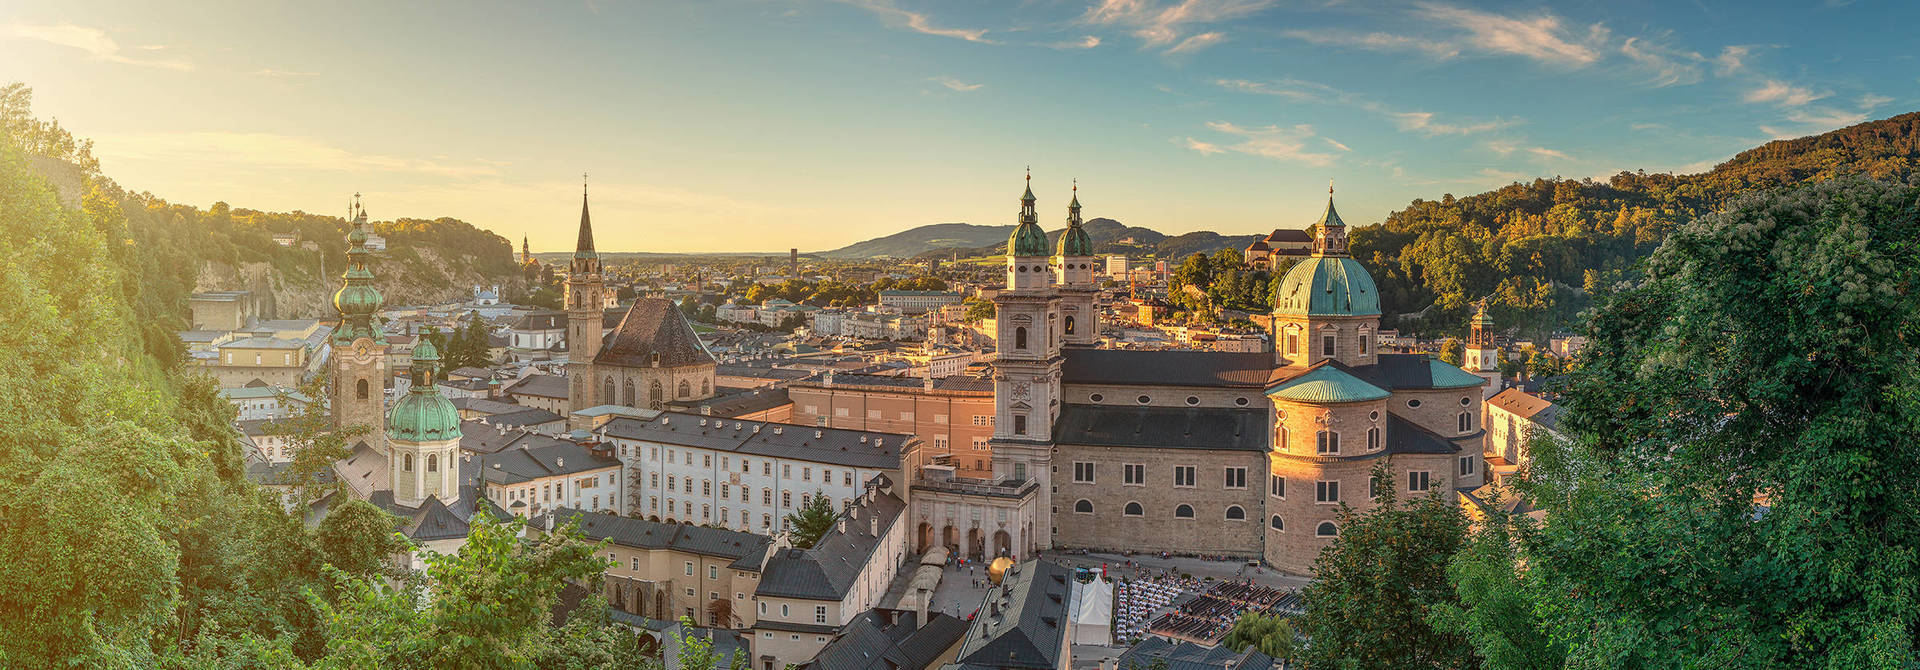 Explorer la ville à pied - Hyperion Hotel Salzburg